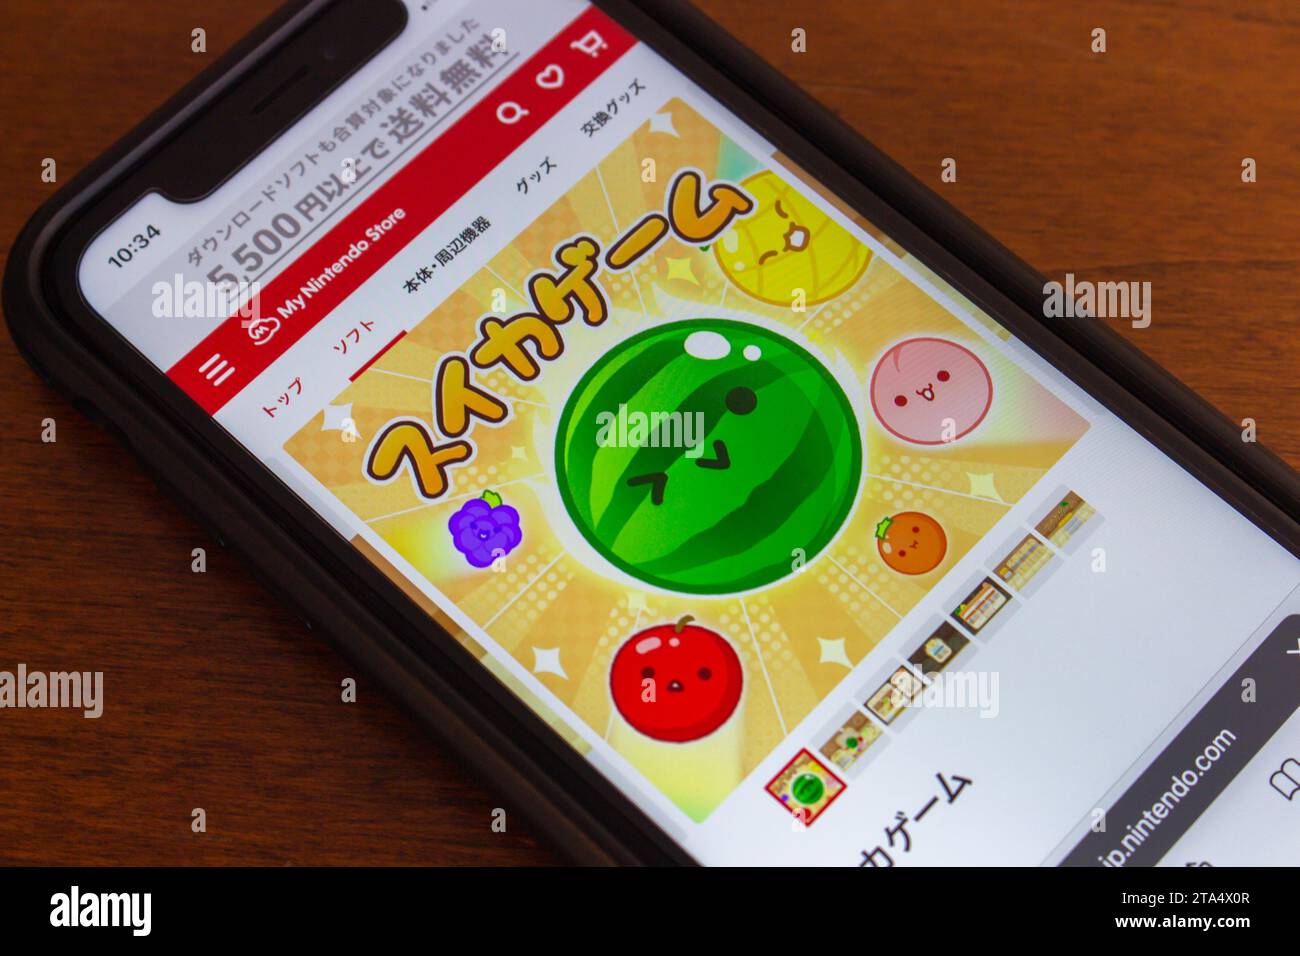 Suika Game (auch bekannt als Watermelon Game), ein japanisches Puzzle-Videospiel, das von Aladdin X entwickelt und veröffentlicht wurde und im Nintendo Store auf dem iPhone-Bildschirm zu sehen ist Stockfoto